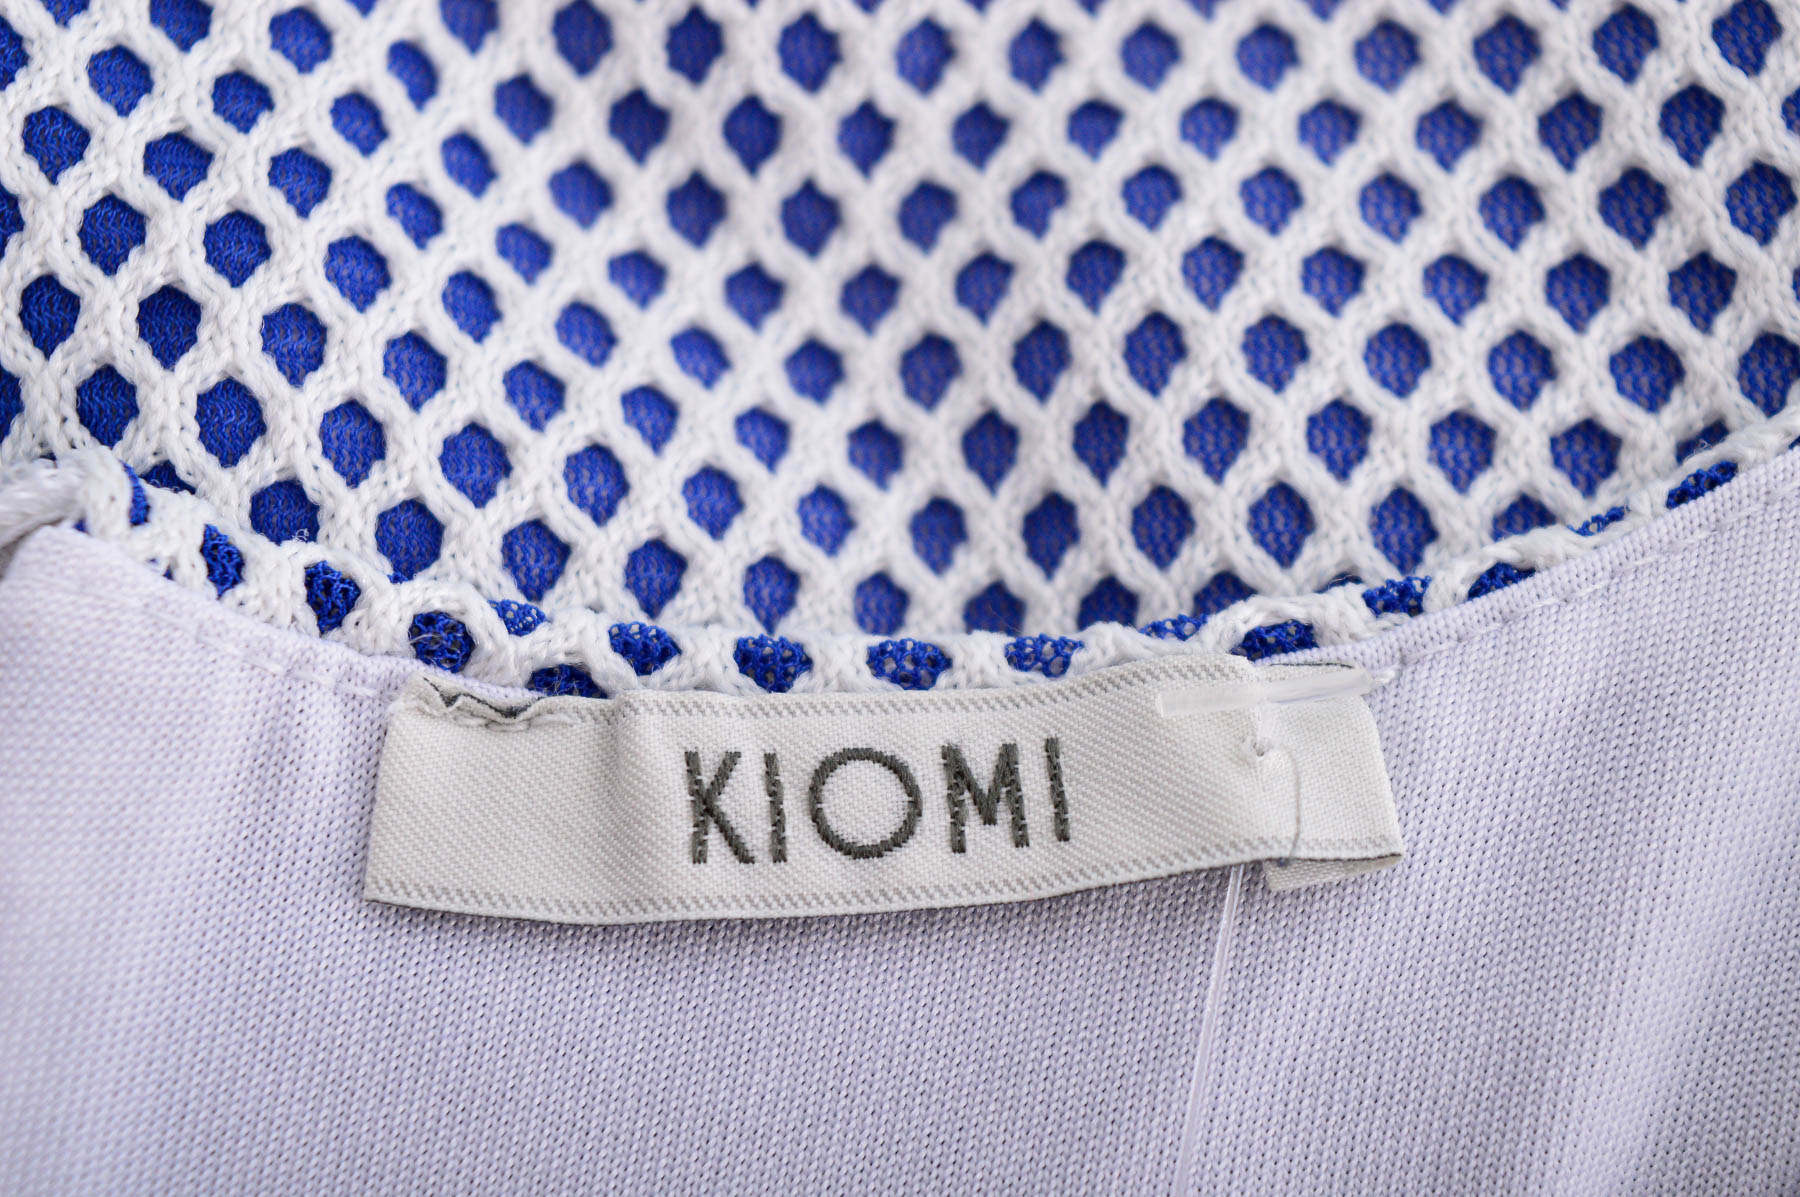 Women's t-shirt - Kiomi - 2